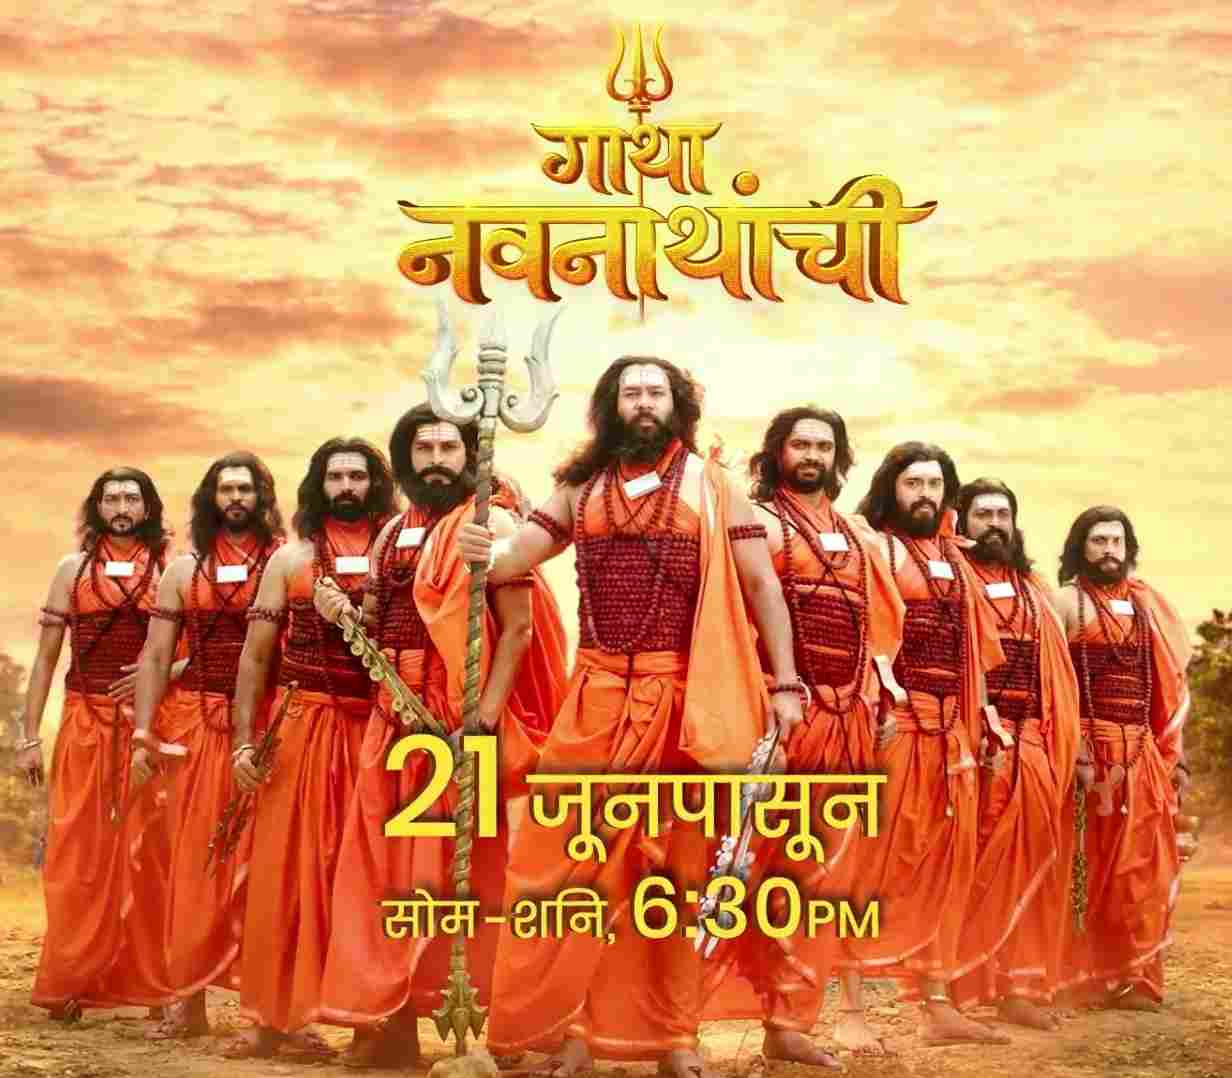 Gatha Navnathanchi Marathi TV Serial on Sony Marathi from 21st June